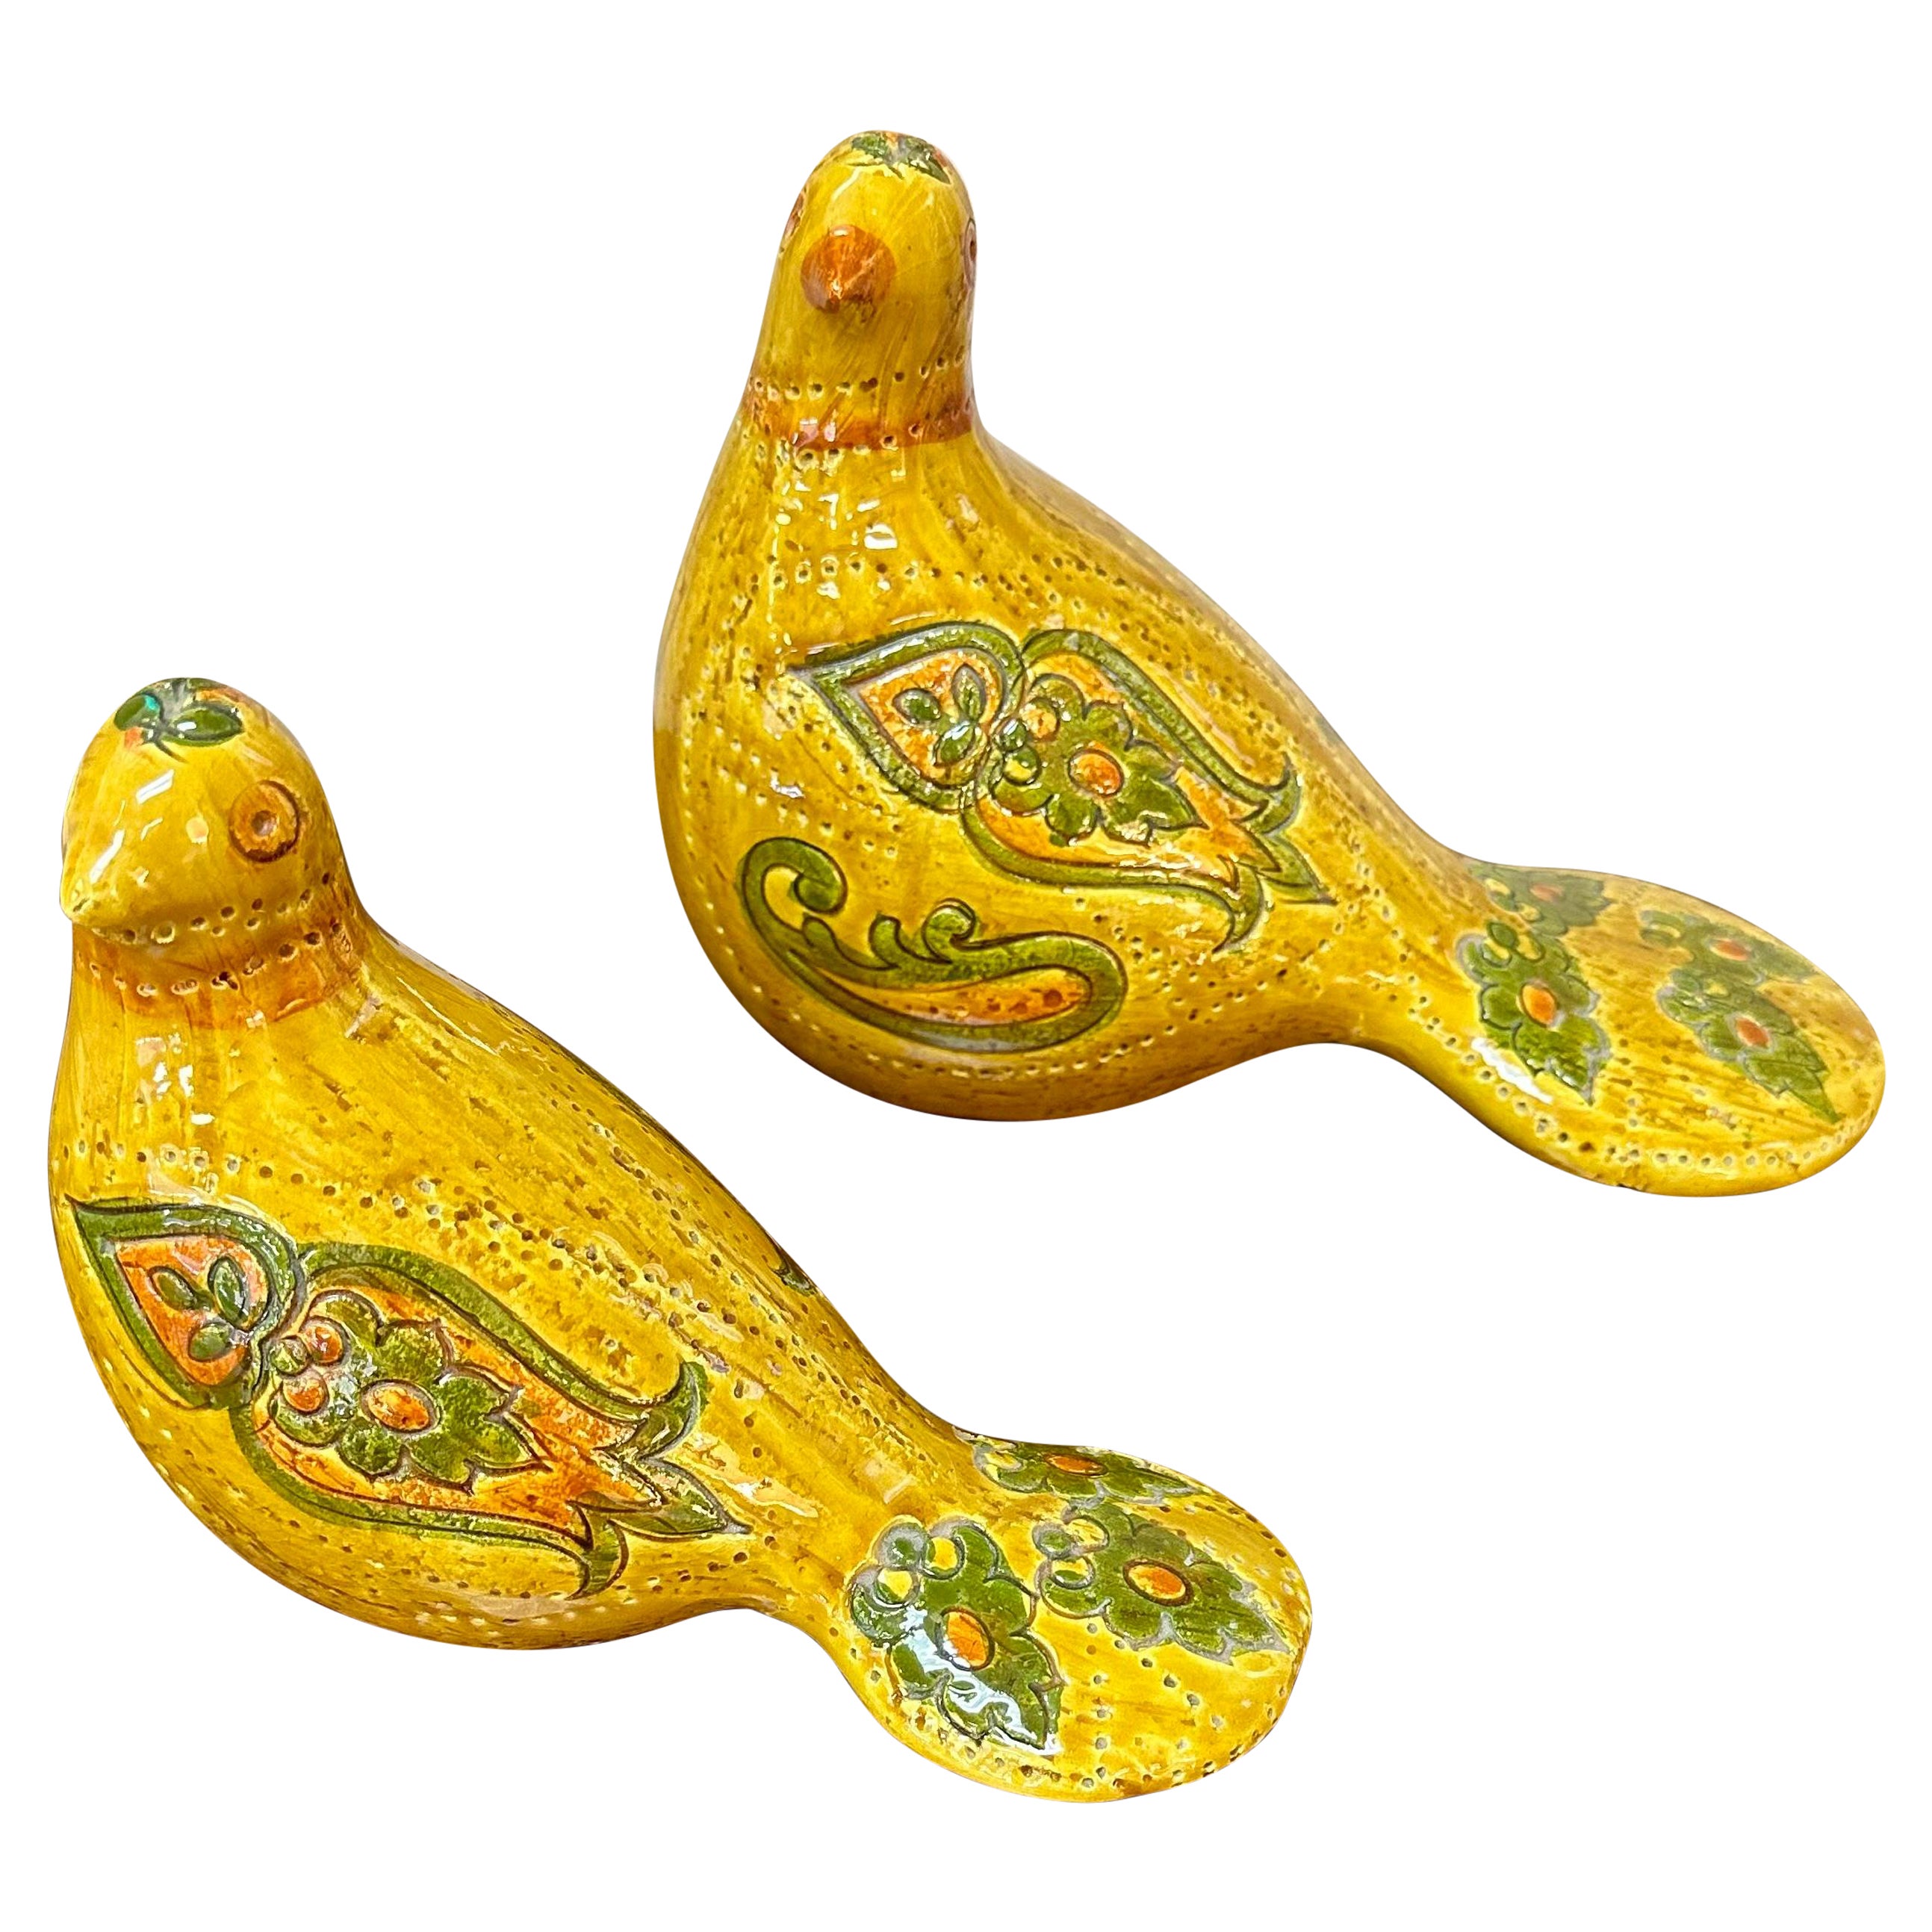 Aldo Londi for Bitossi Pottery Doves, a pair (marked Rosenthal Netter)